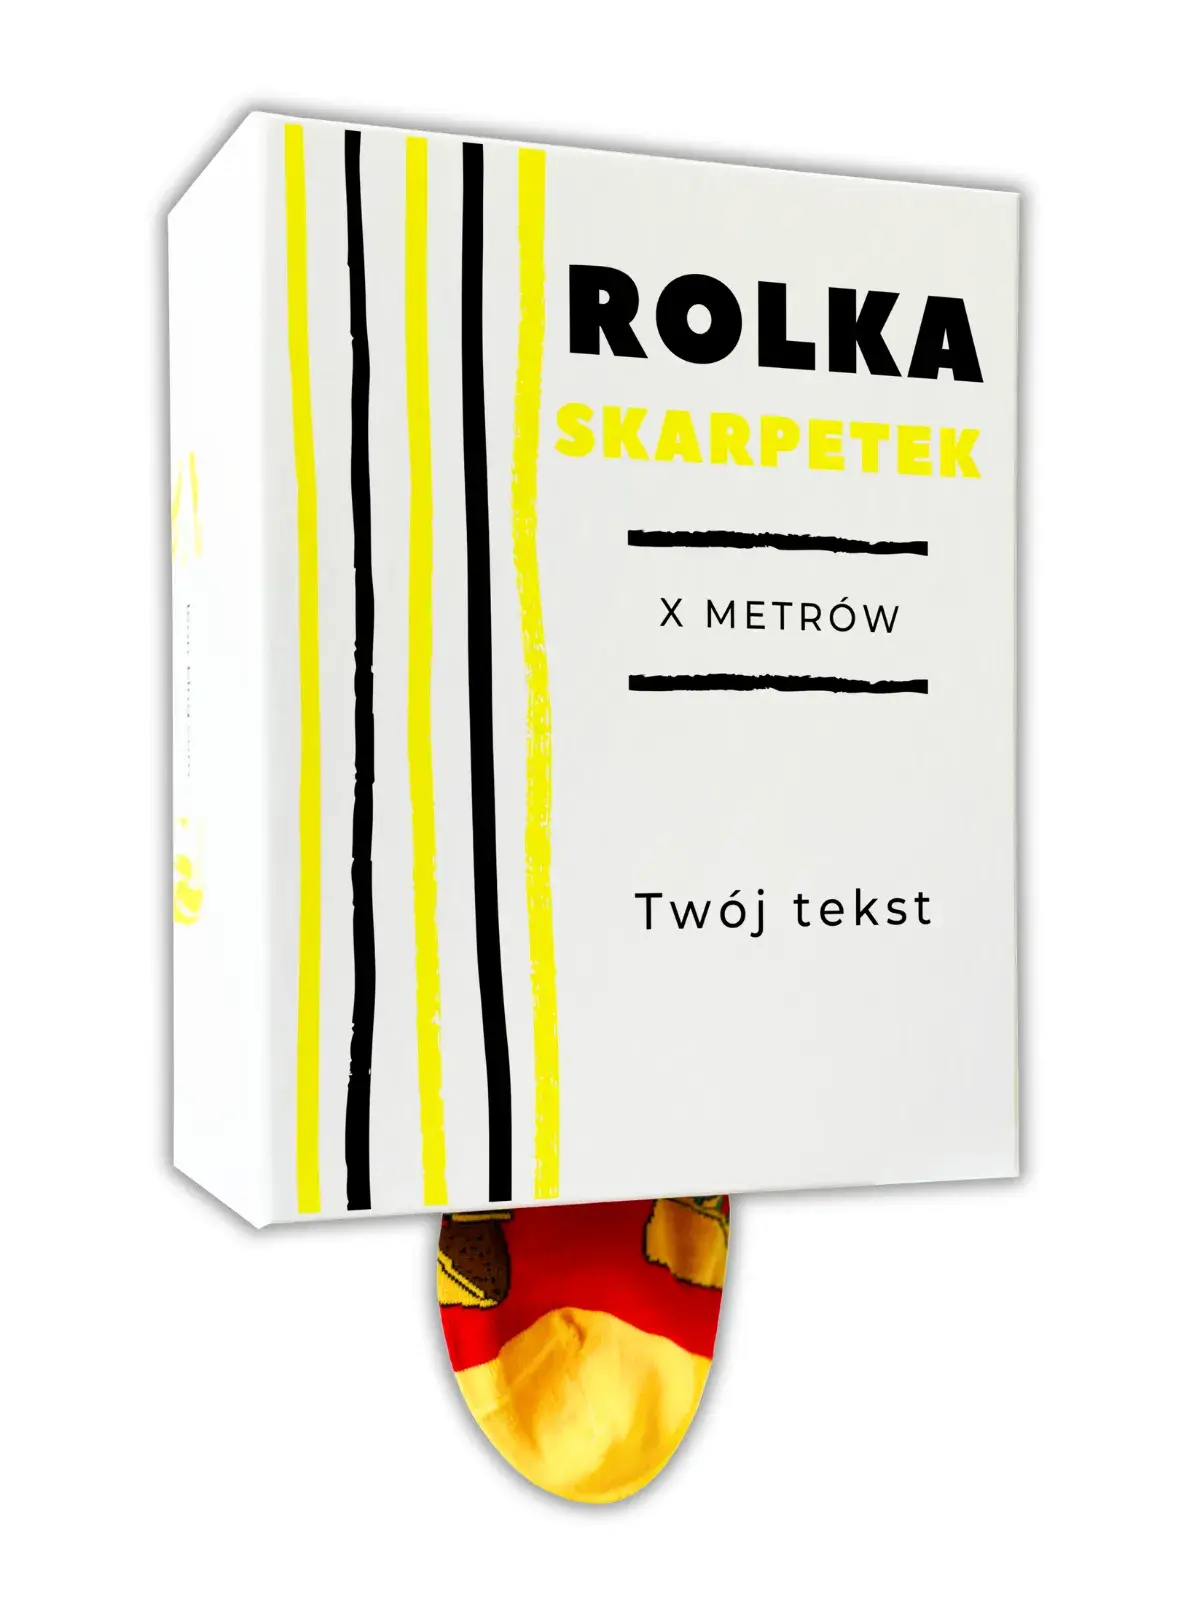 Rolka Skarpetek Light